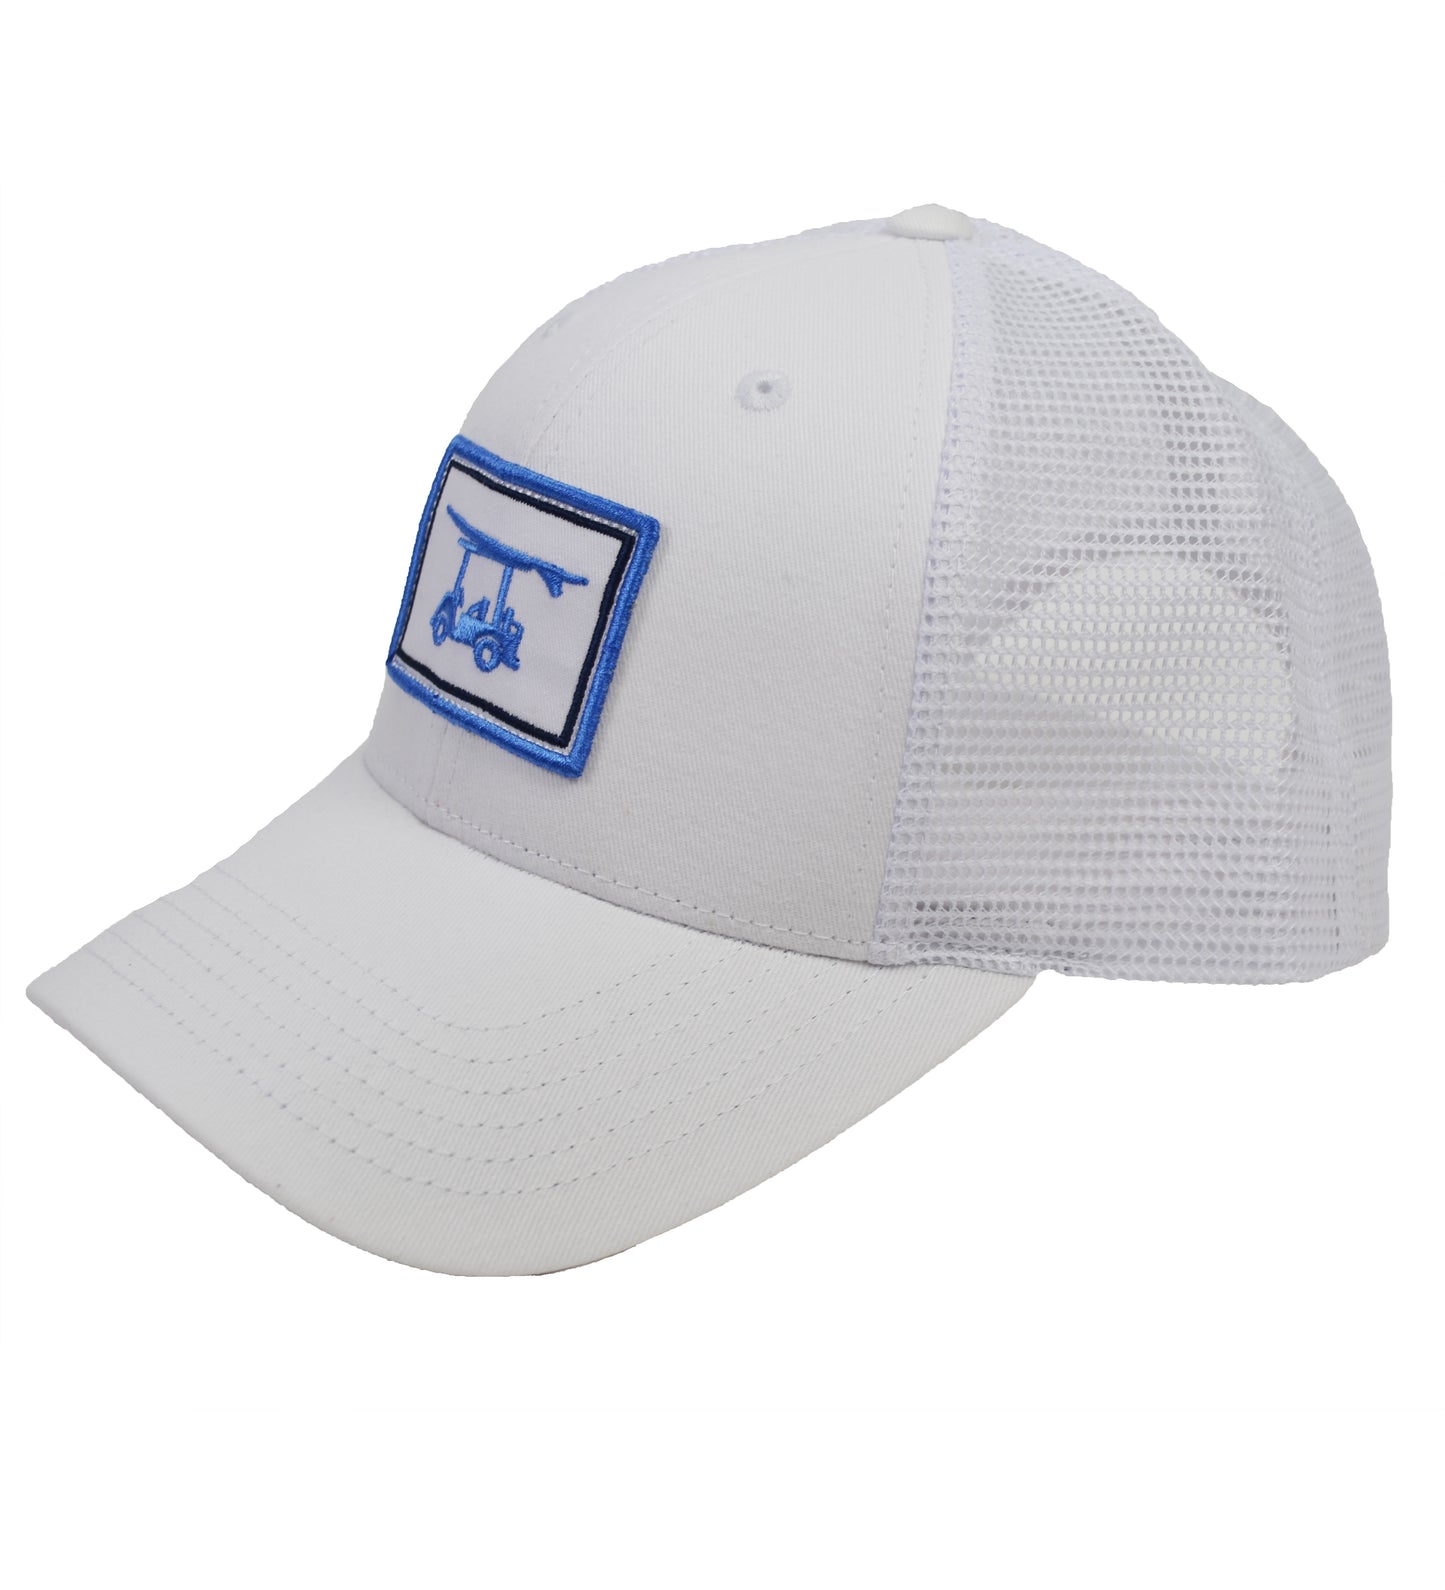 Trucker Hat - White